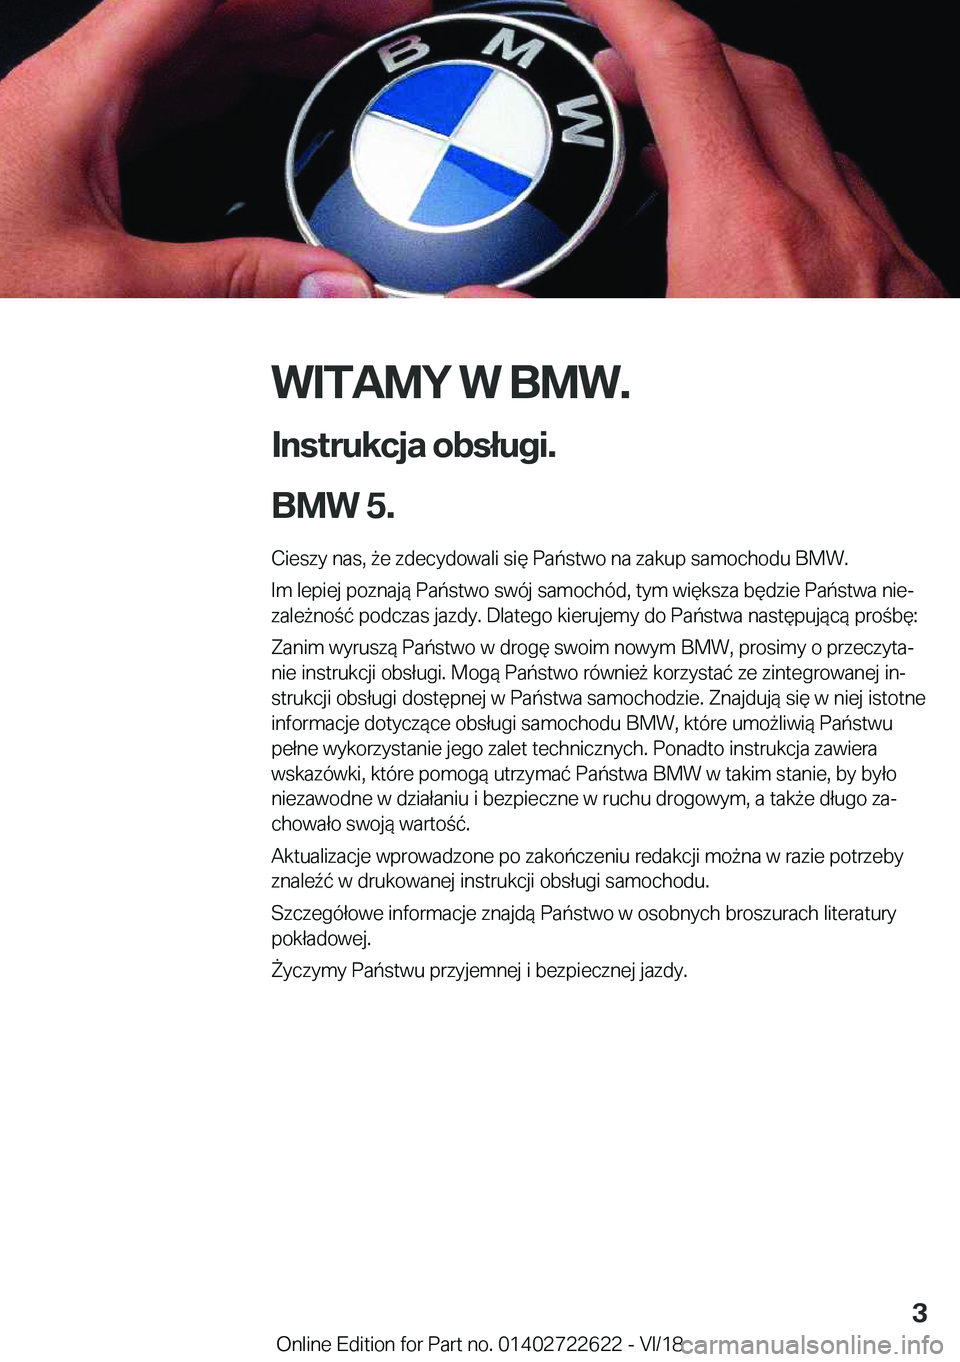 BMW 5 SERIES 2019  Instrukcja obsługi (in Polish) �W�I�T�A�M�Y��W��B�M�W�.
�I�n�s�t�r�u�k�c�j�a��o�b�s�ł�u�g�i�.
�B�M�W��5�. �C�i�e�s�z�y��n�a�s�,�9�e��z�d�e�c�y�d�o�w�a�l�i��s�i�